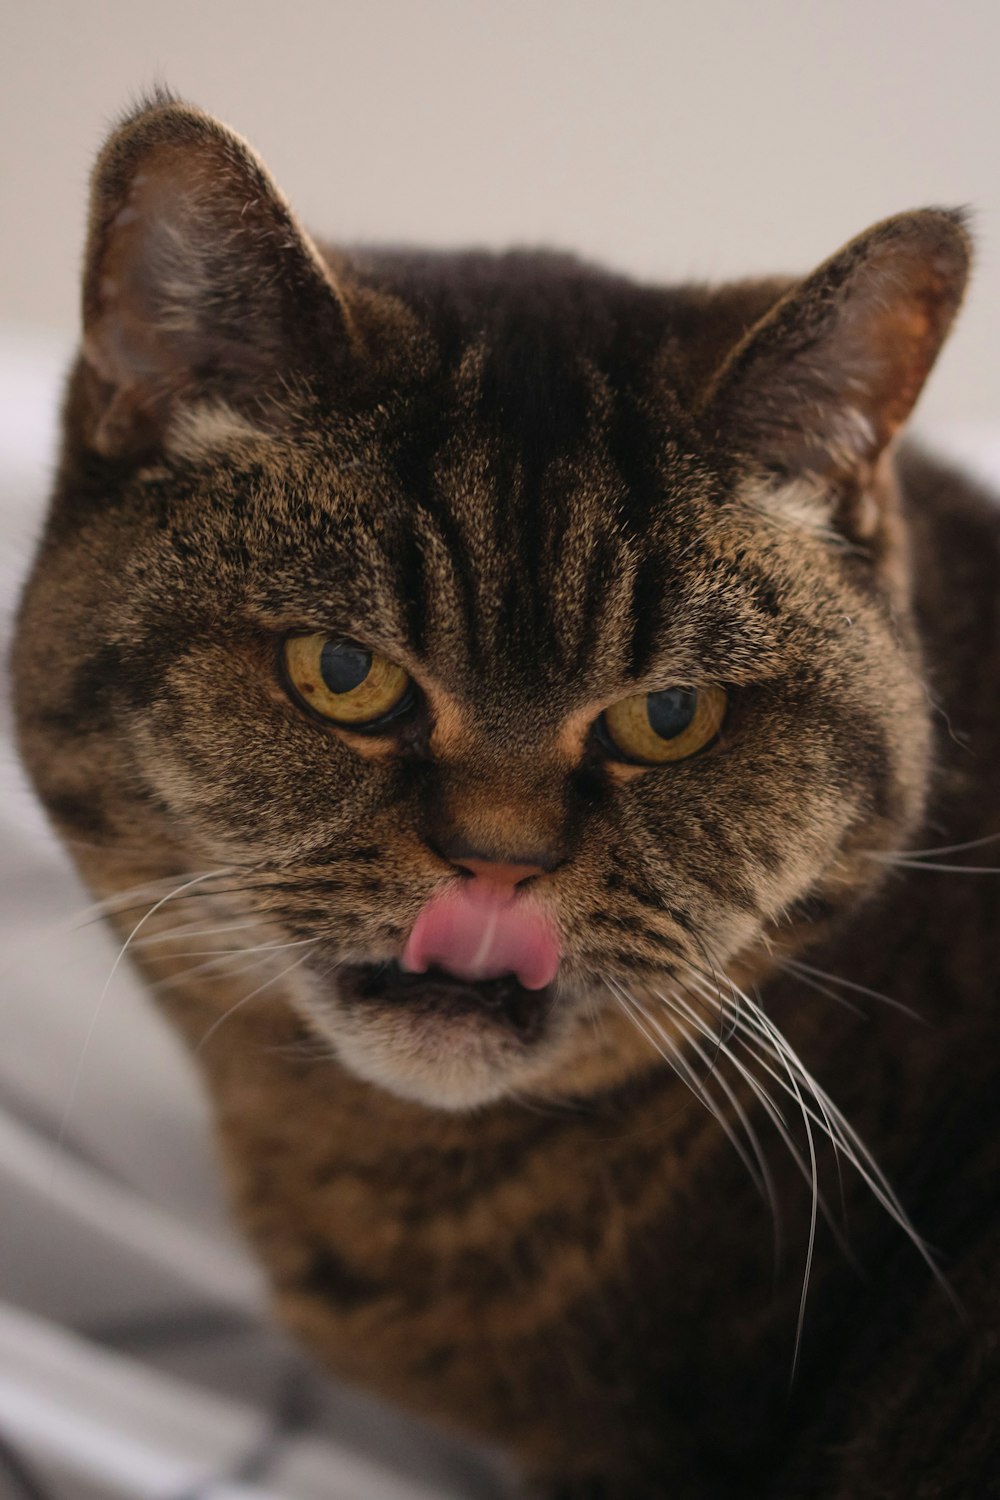 혀를 내밀고 있는 고양이의 클로즈업